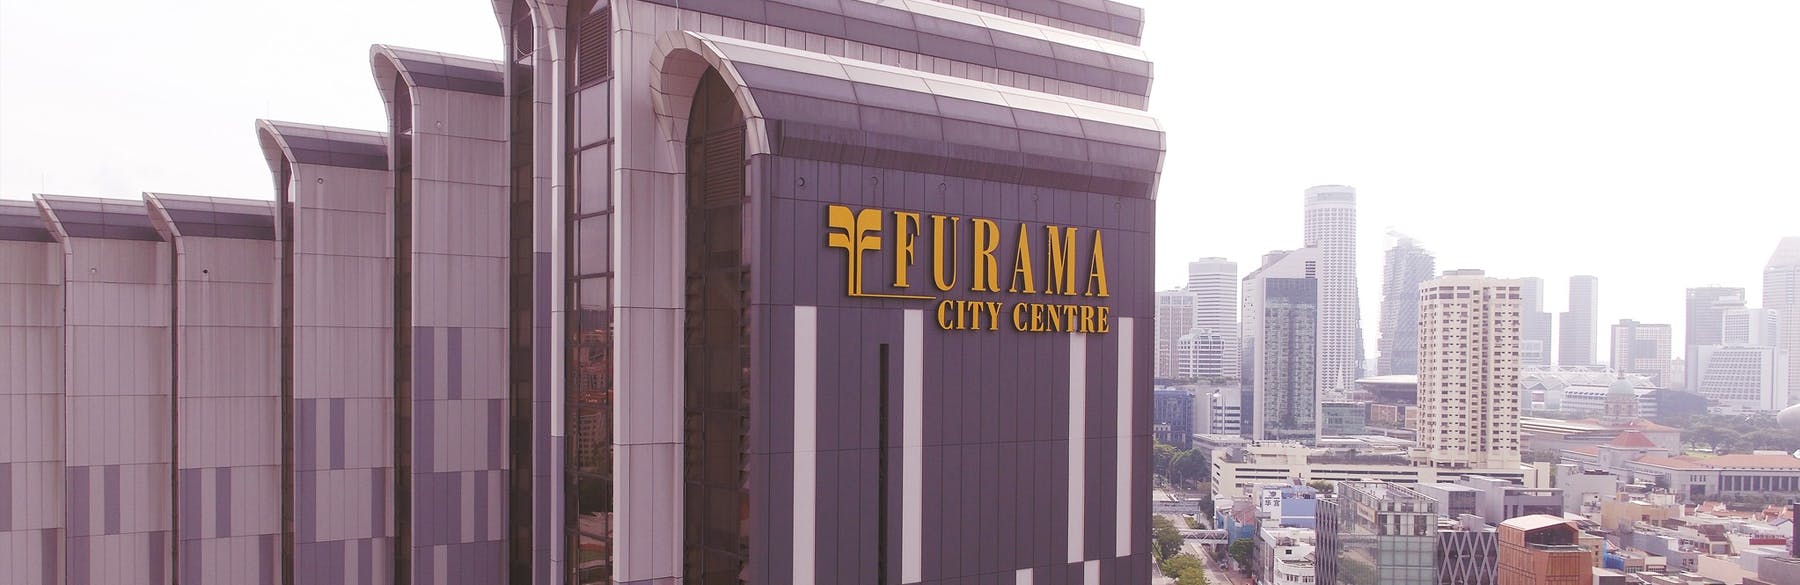 Furama City Center